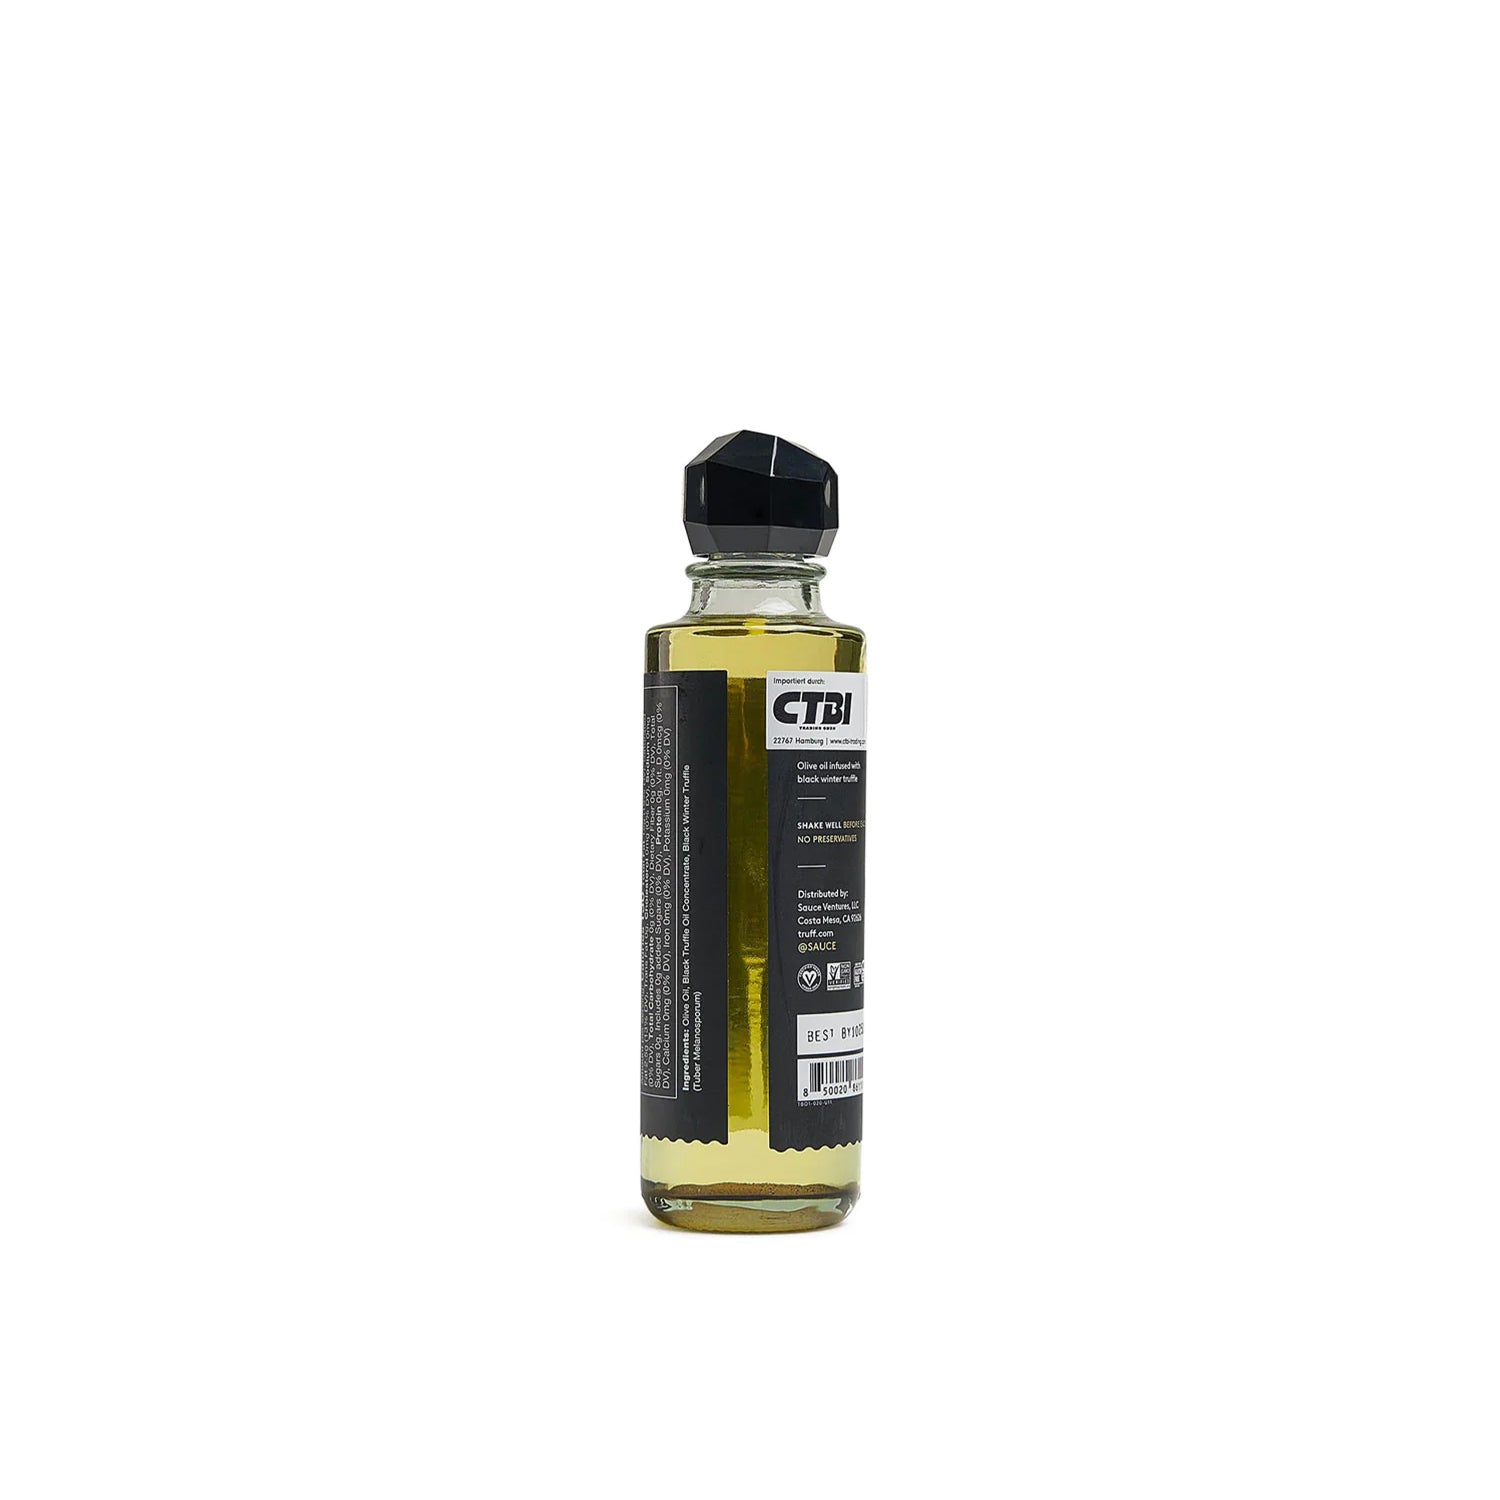 Truff Truffle Oil - Black Truffle Infused Olive Oil  - Allike Store